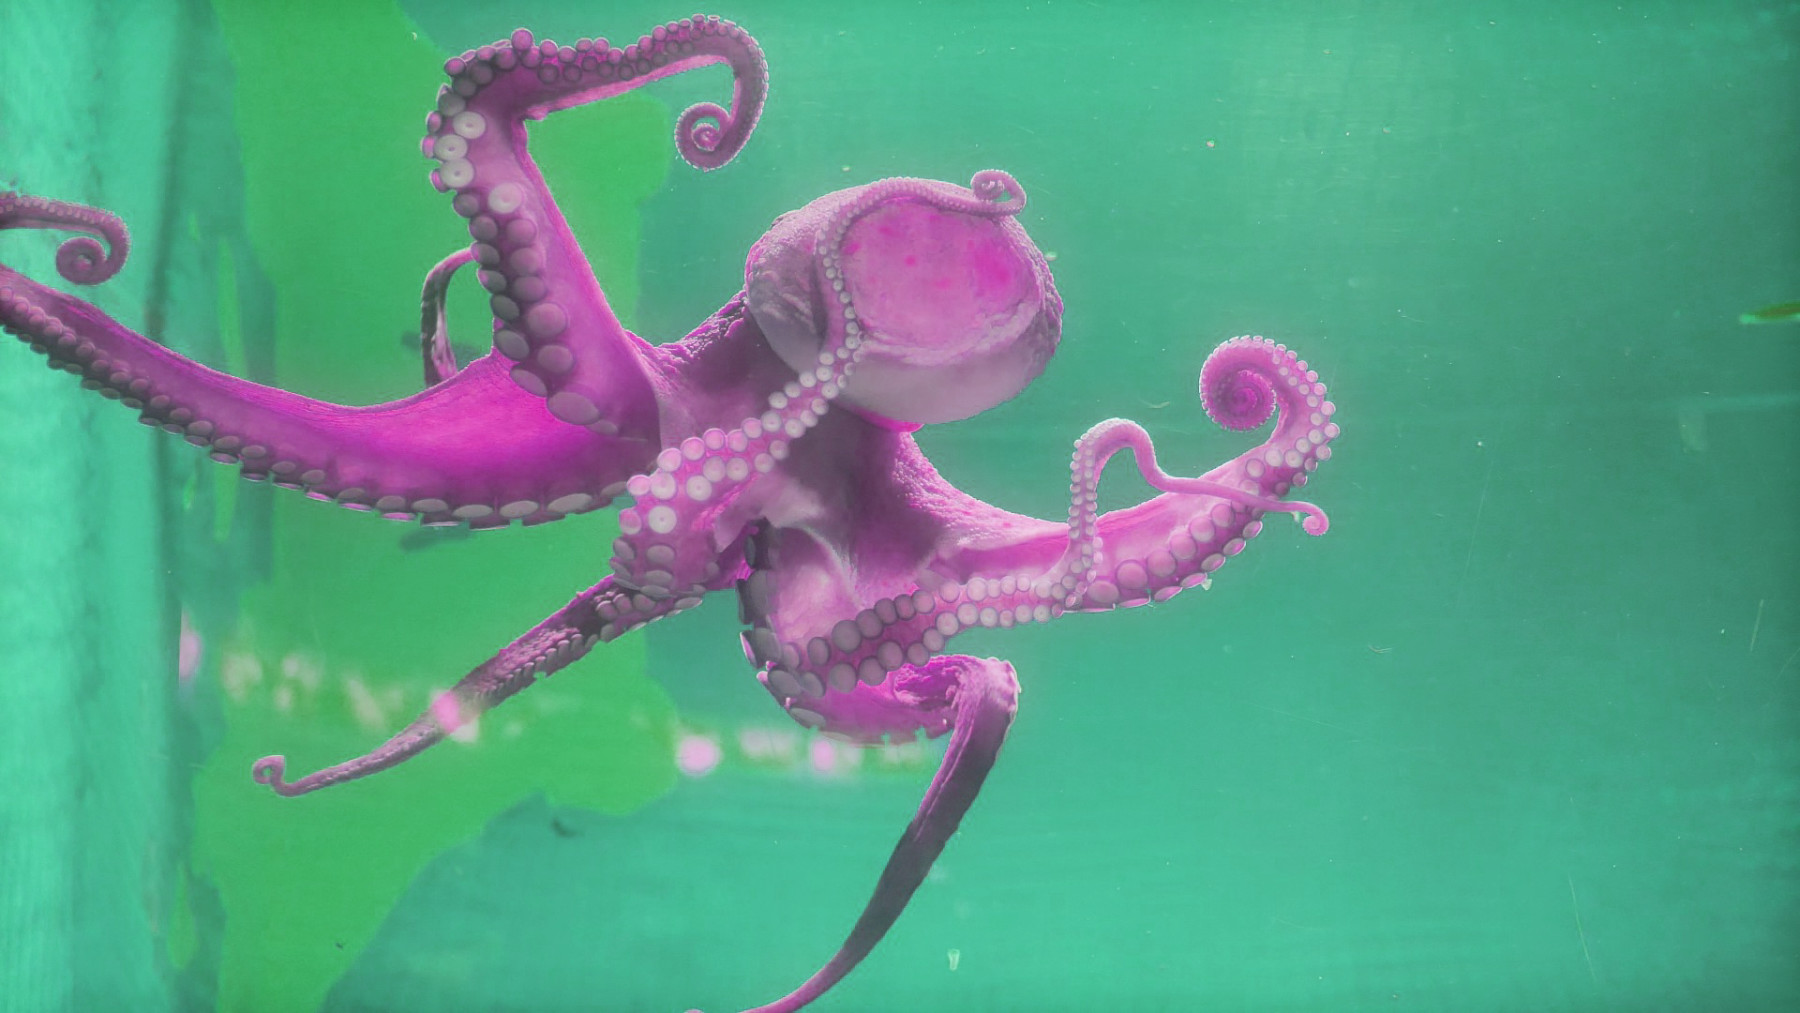 Ein violetter Oktopus schwimmt vor einem grünen Hintergrund.